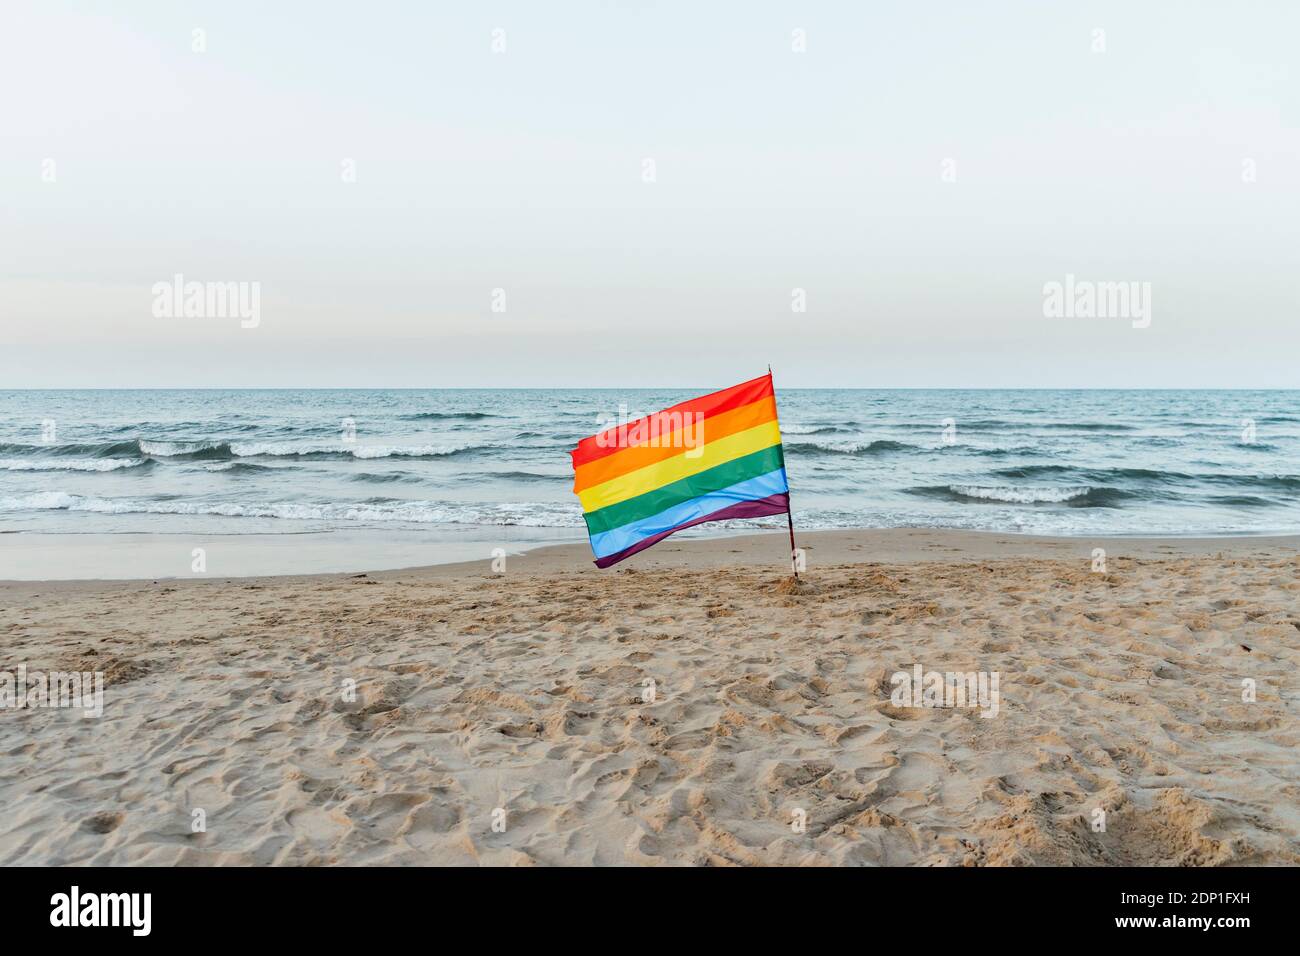 Drapeau de fierté gay sur la plage Banque D'Images